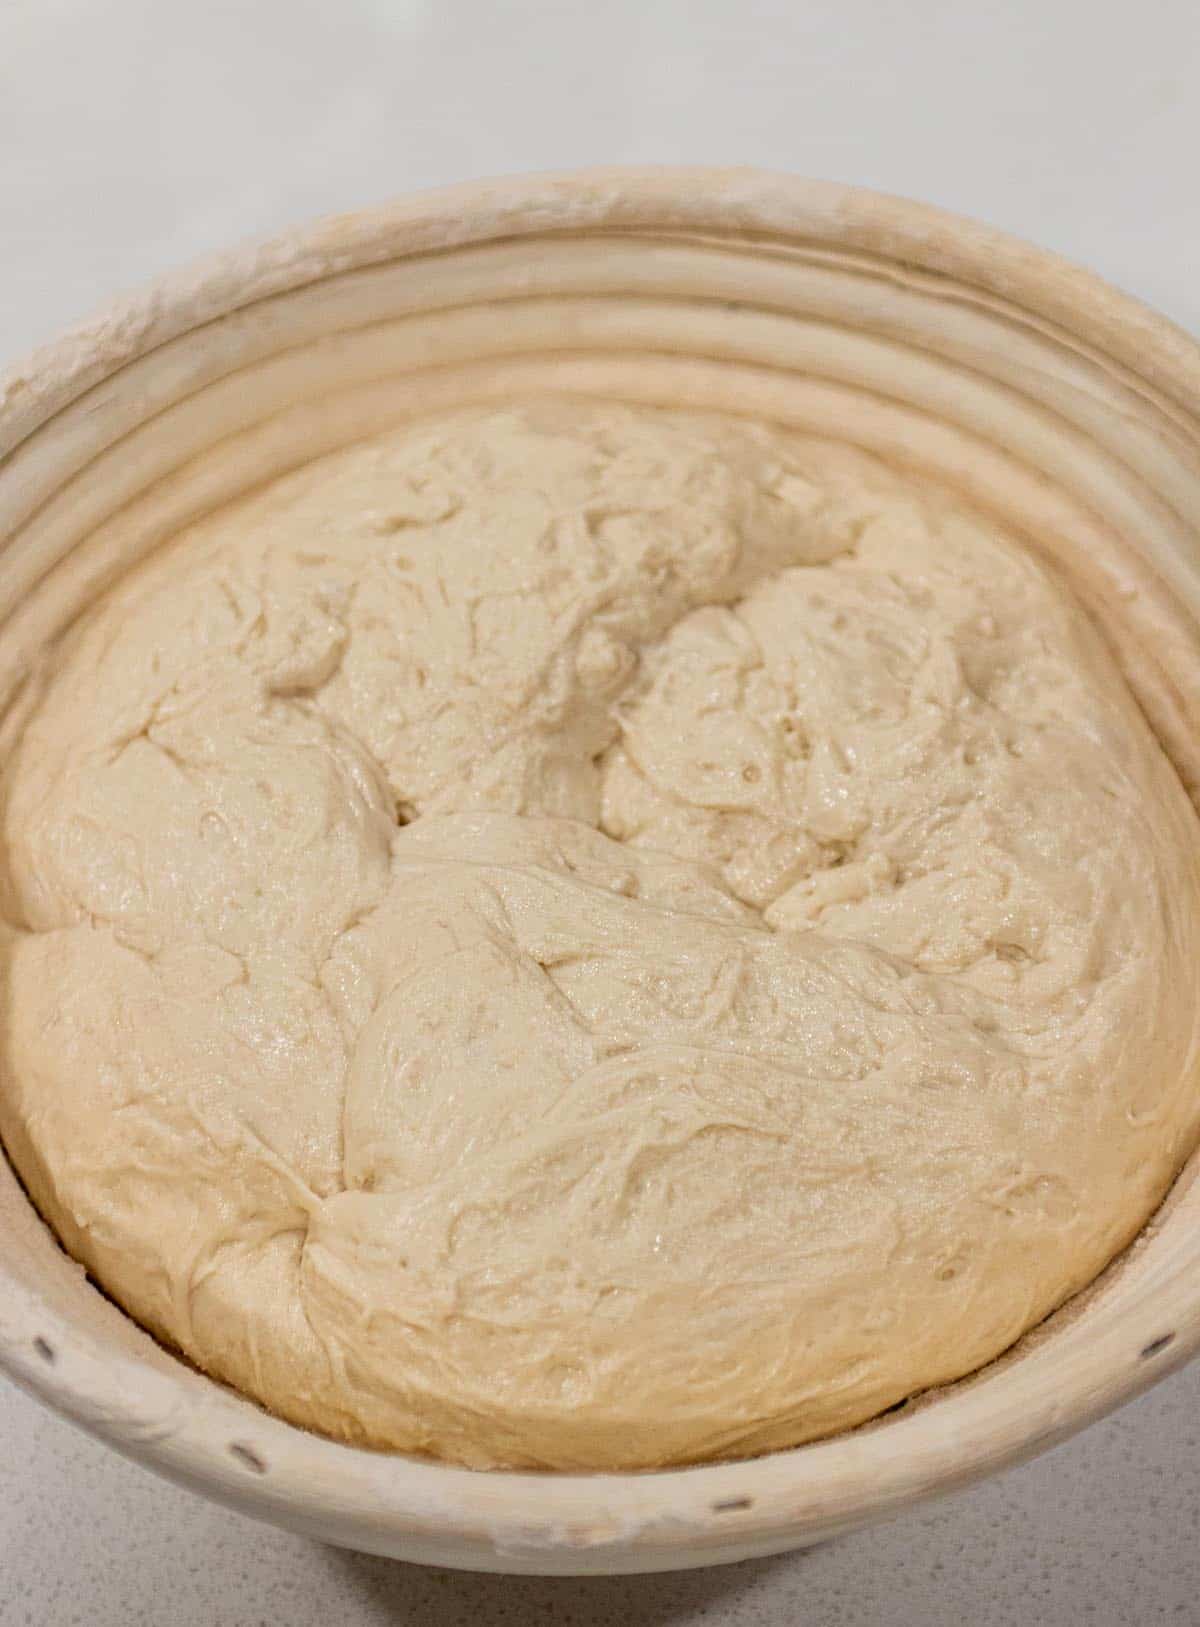 Banneton basket with a raw dough of sourdough. 